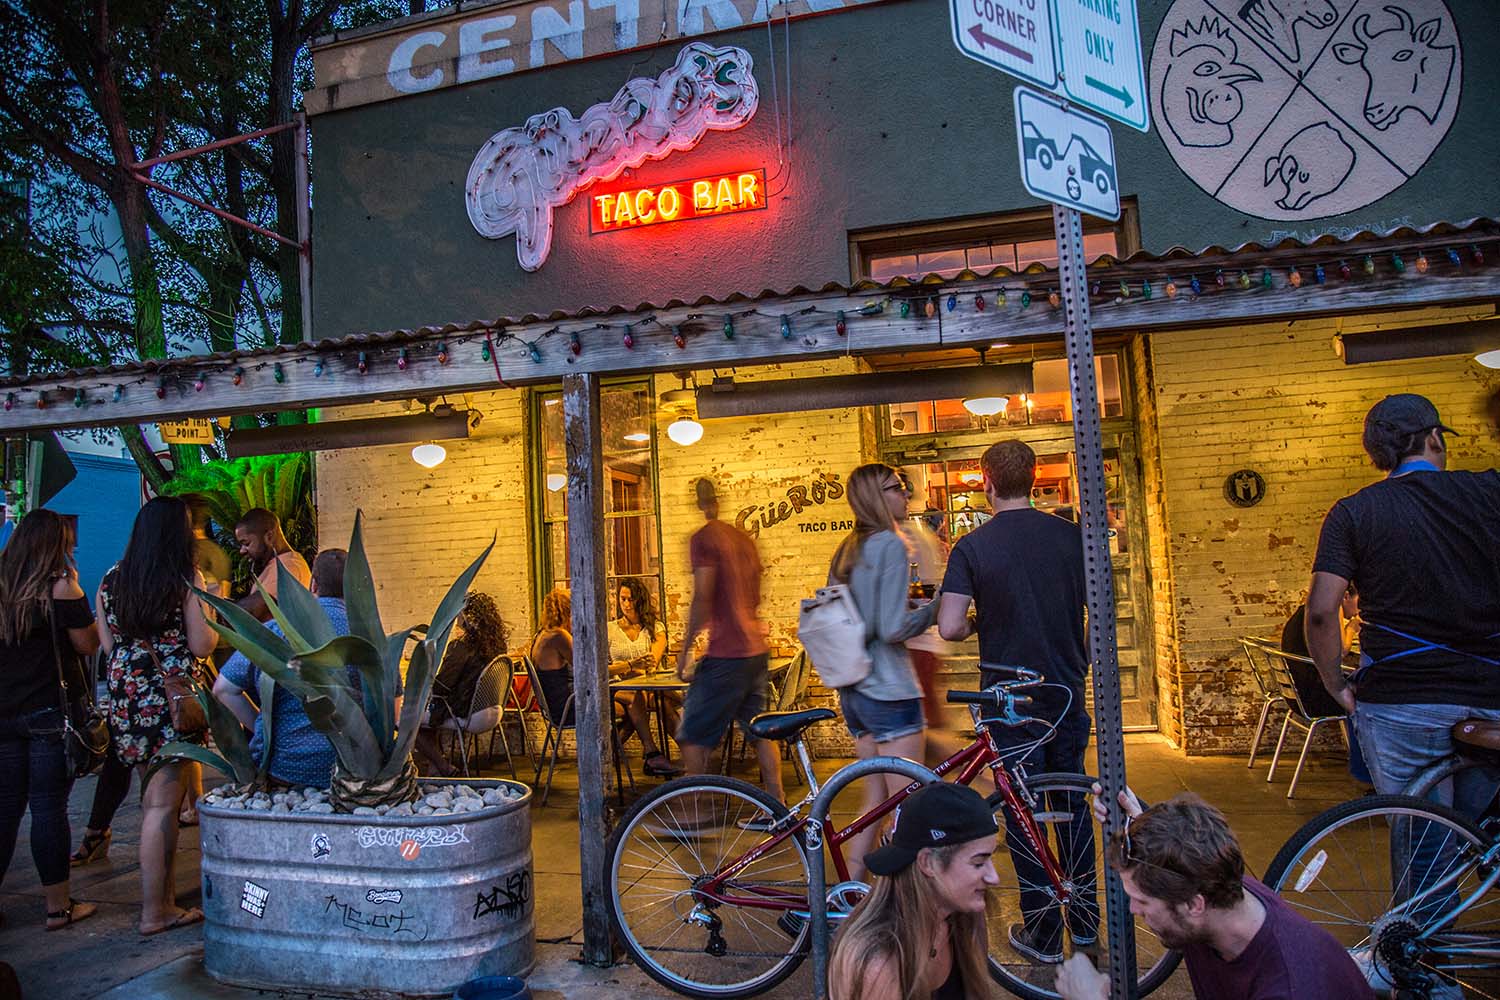 Guero's Taco Bar - South Congress, Austin, TX